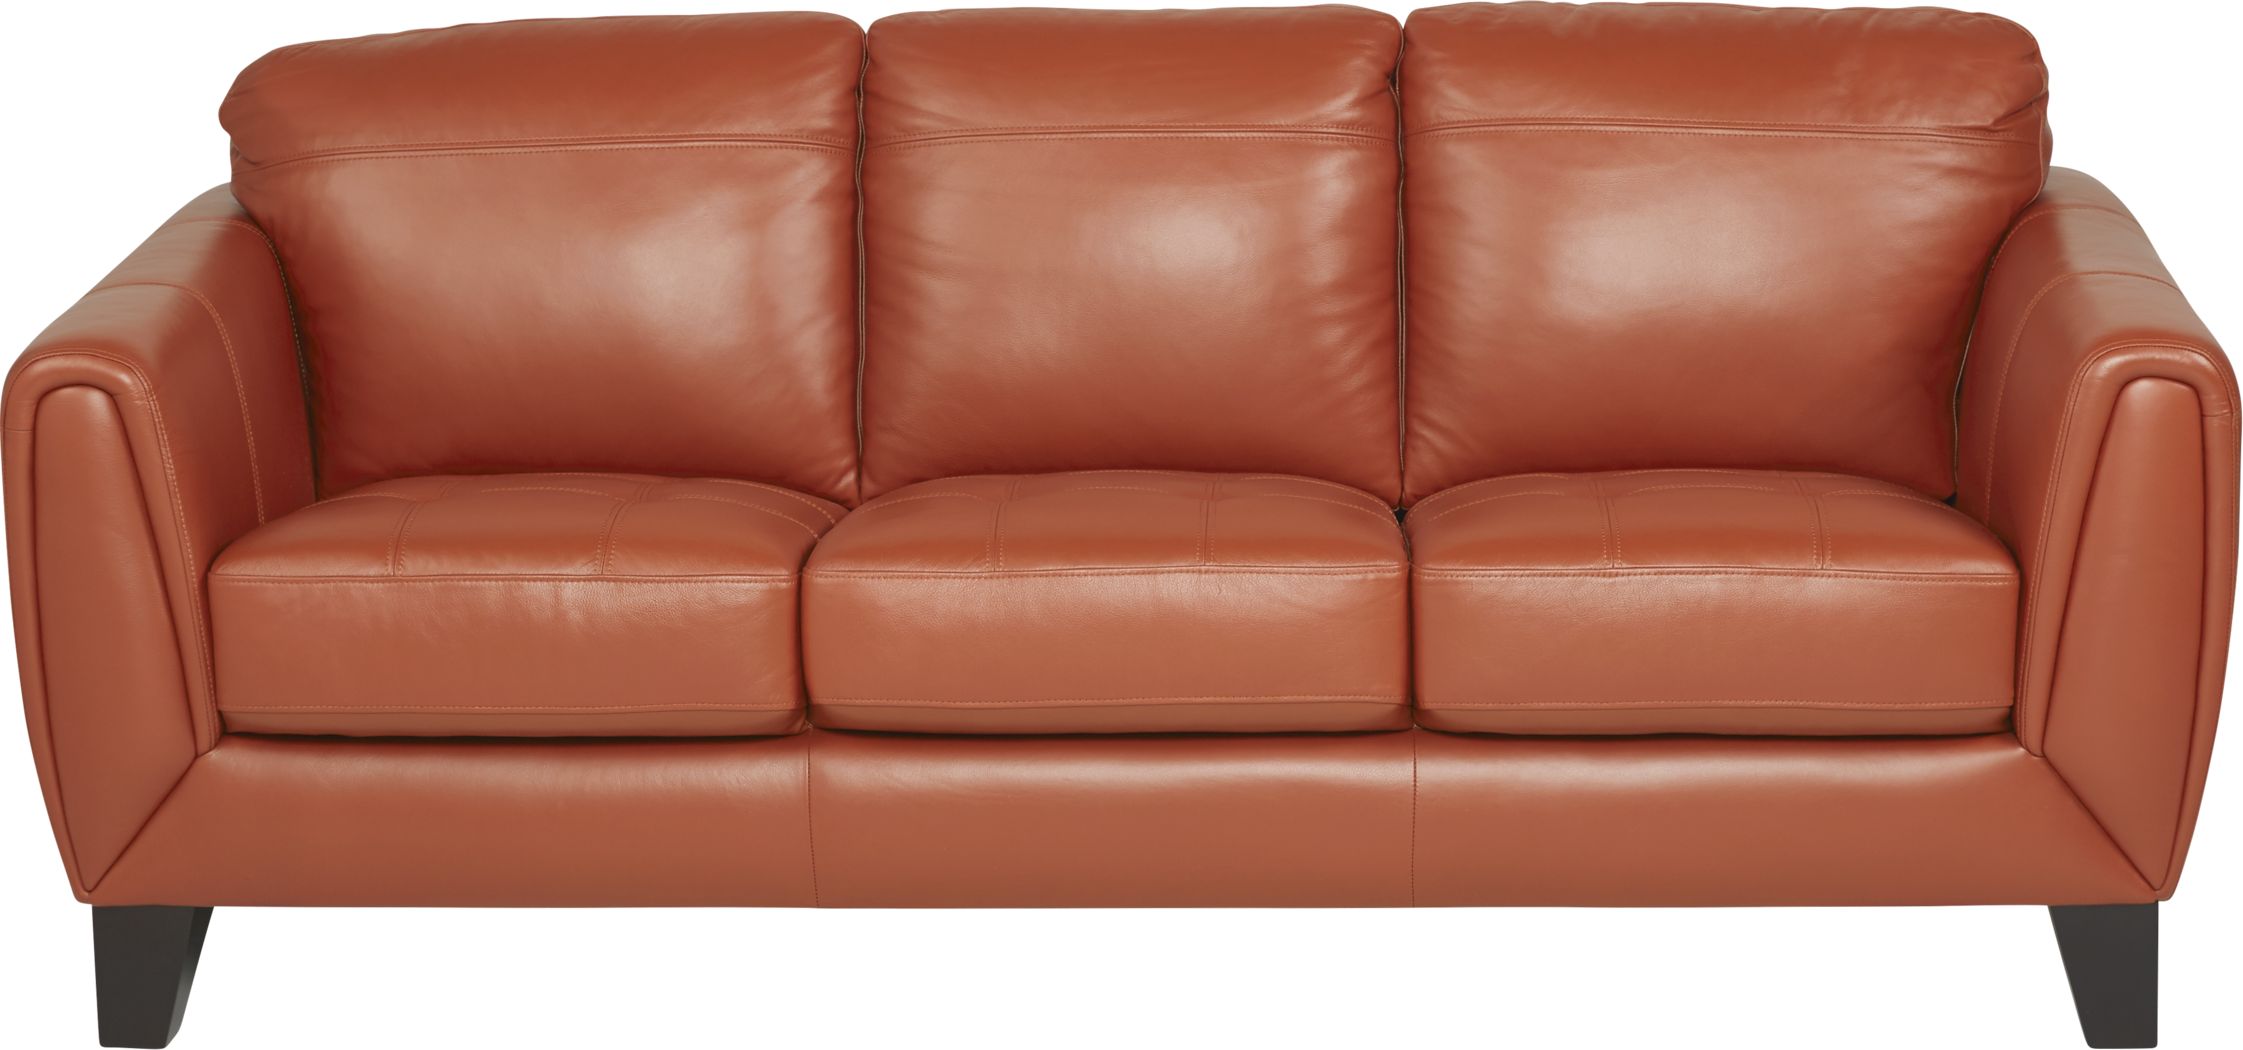 Leather Living Room Furniture, Leather Sofa Orlando Fl